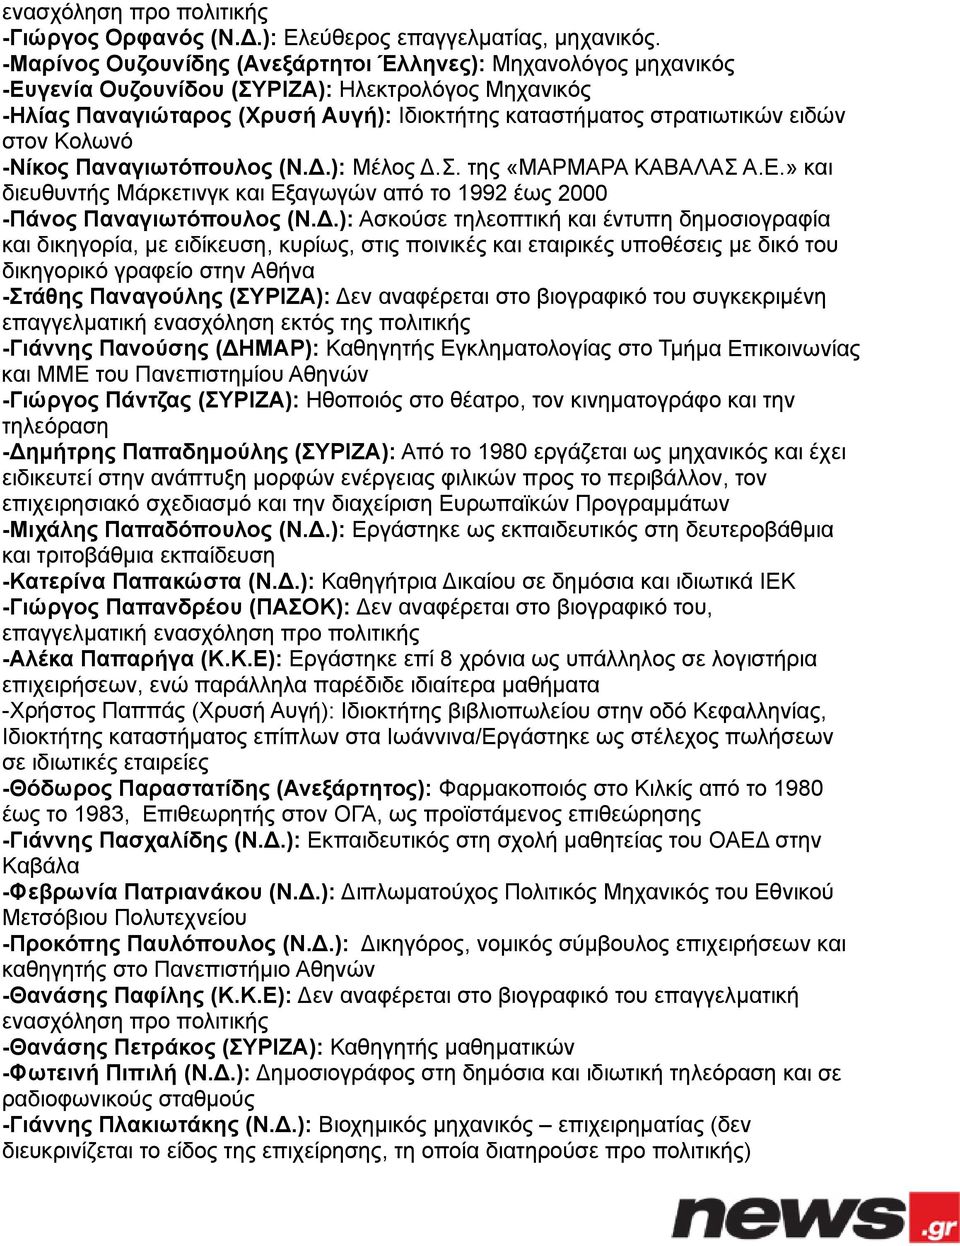 Κολωνό -Νίκος Παναγιωτόπουλος (Ν..): Μέλος.Σ. της «ΜΑΡΜΑΡΑ ΚΑΒΑΛΑΣ Α.Ε.» και διευθυντής Μάρκετινγκ και Εξαγωγών από το 1992 έως 2000 -Πάνος Παναγιωτόπουλος (Ν.